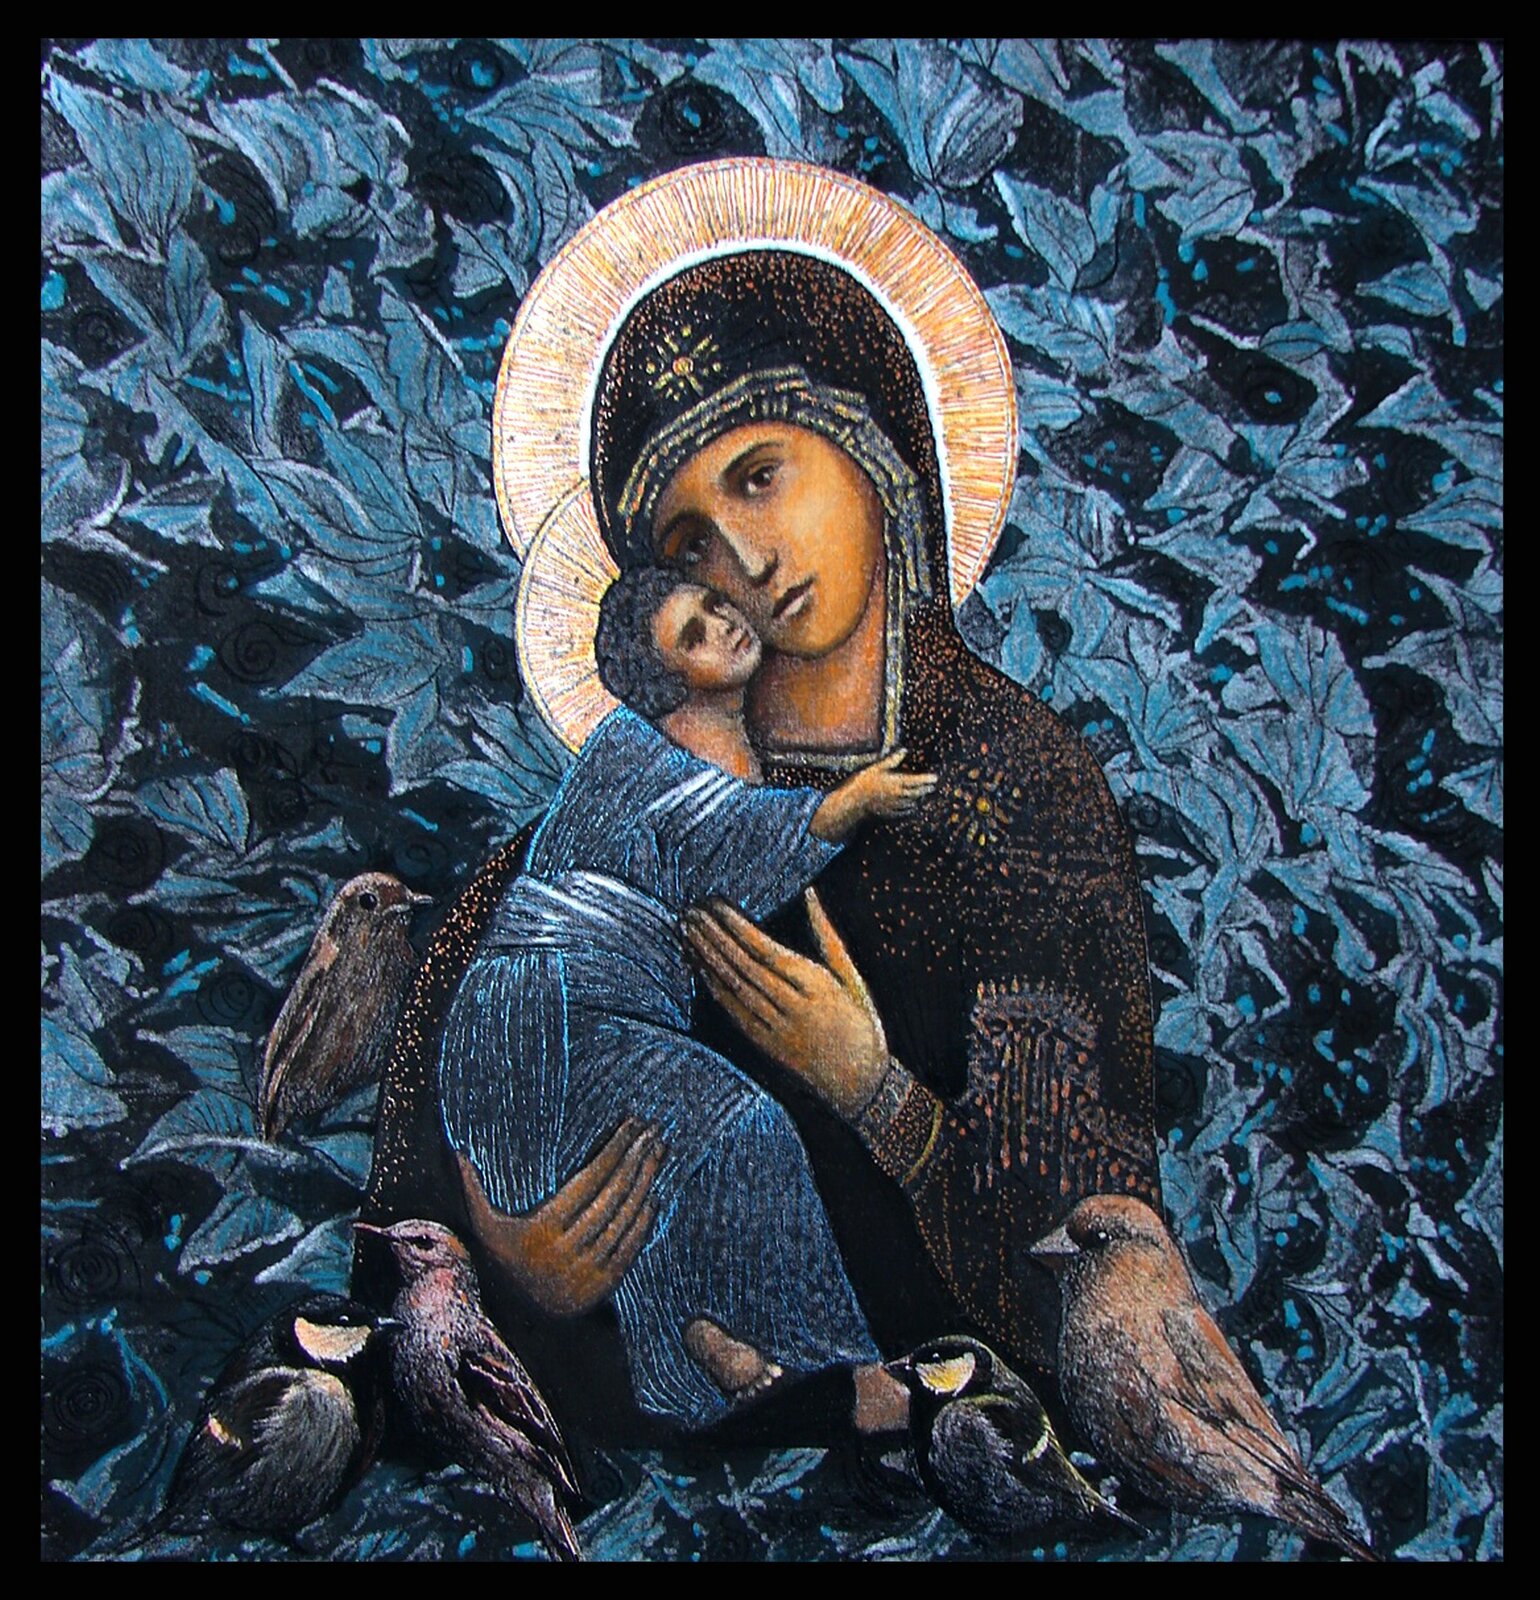 Ilustracja prezentuje ikonę autorstwa Ewy Bińczyk. Matka Boska, w brązowym stroju, przytula policzkiem Dzieciątko w niebieskiej szacie. Przed nimi przedstawione zostały ptaki. Tło stanowią szaro-niebieskie liście.